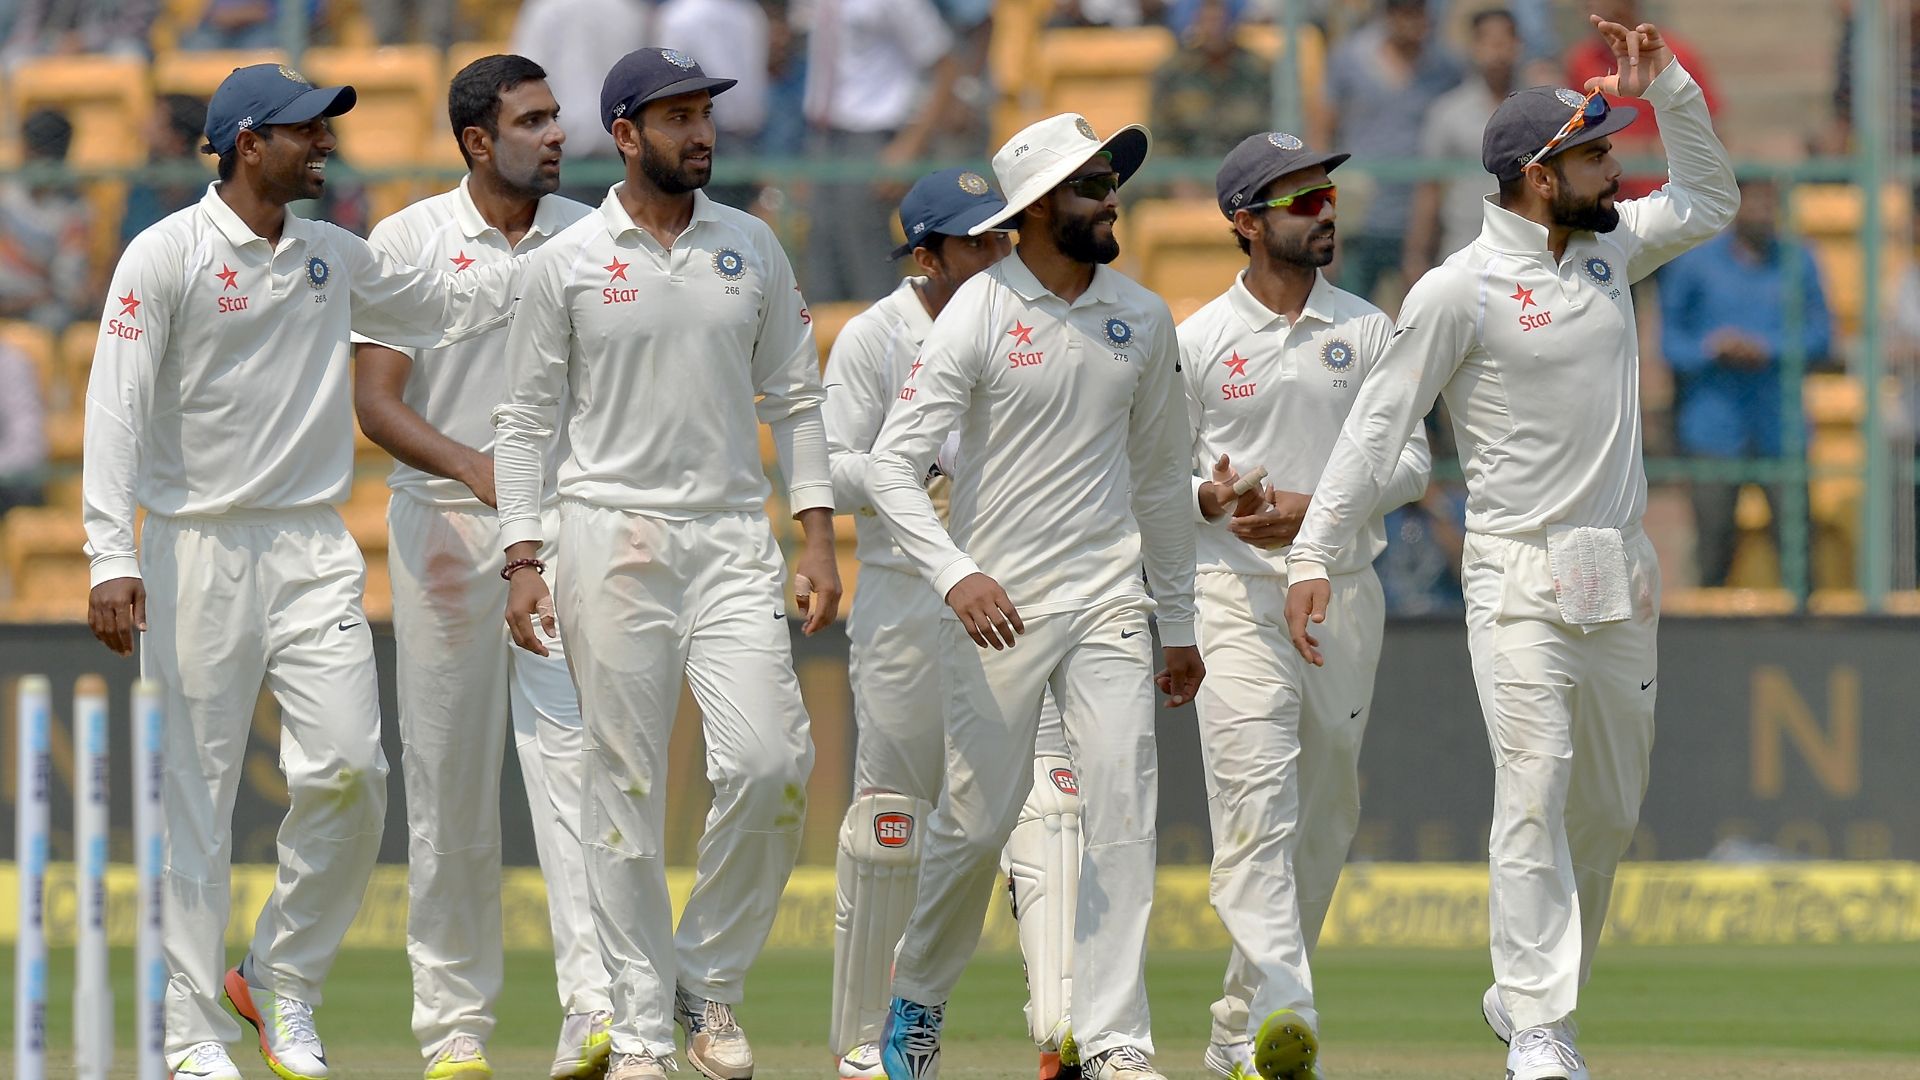 विराट कोहली की कप्तानी से खुश नहीं हैं इयान चैपल गिनाया भारतीय कप्तान की गलतियाँ 4